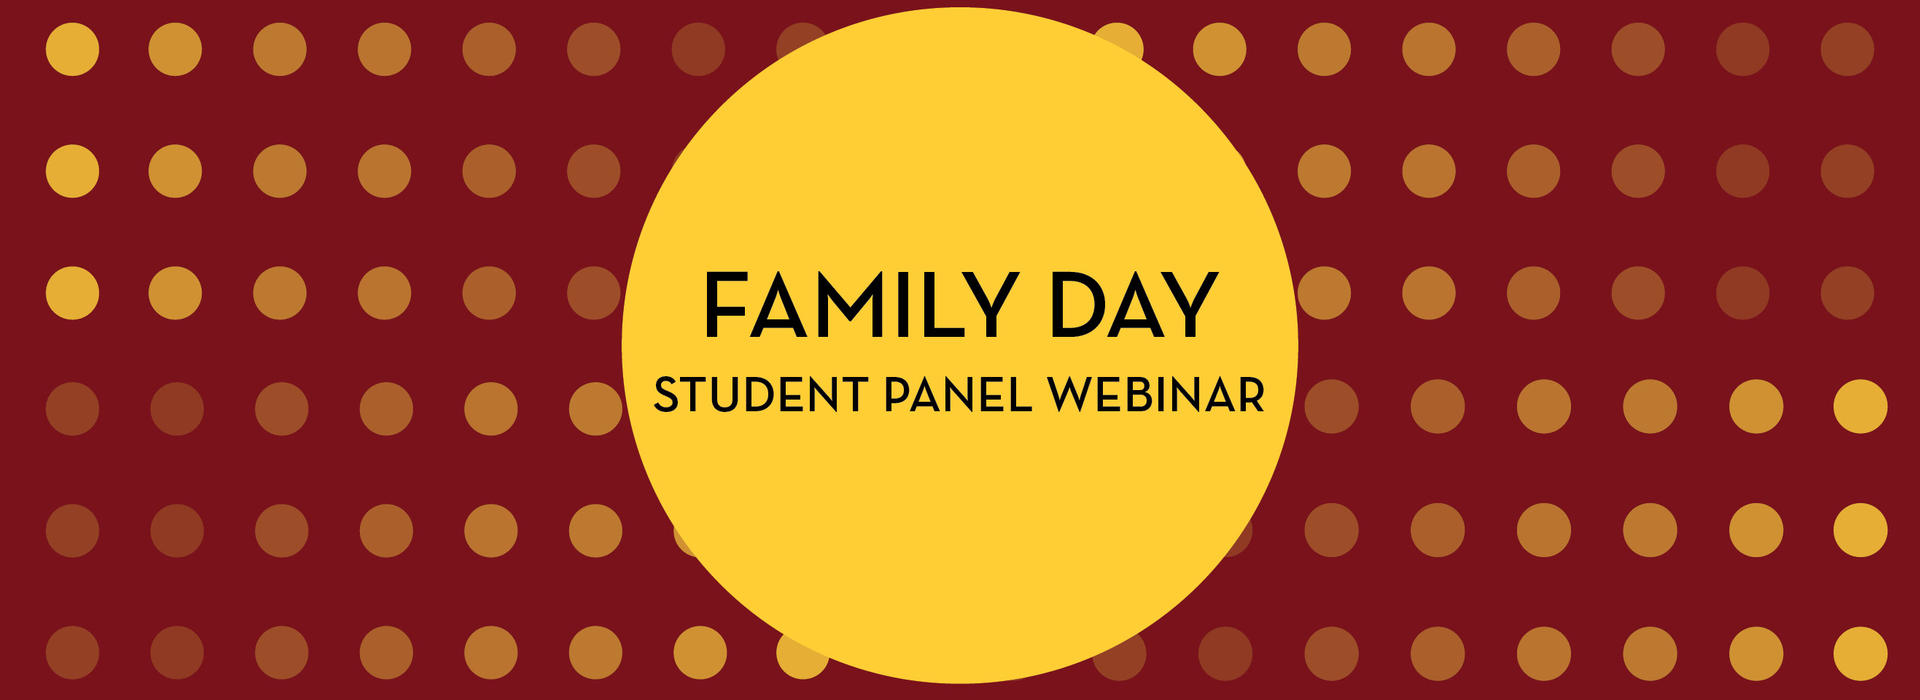 Family Day 2020 Student Panel Webinar Banner